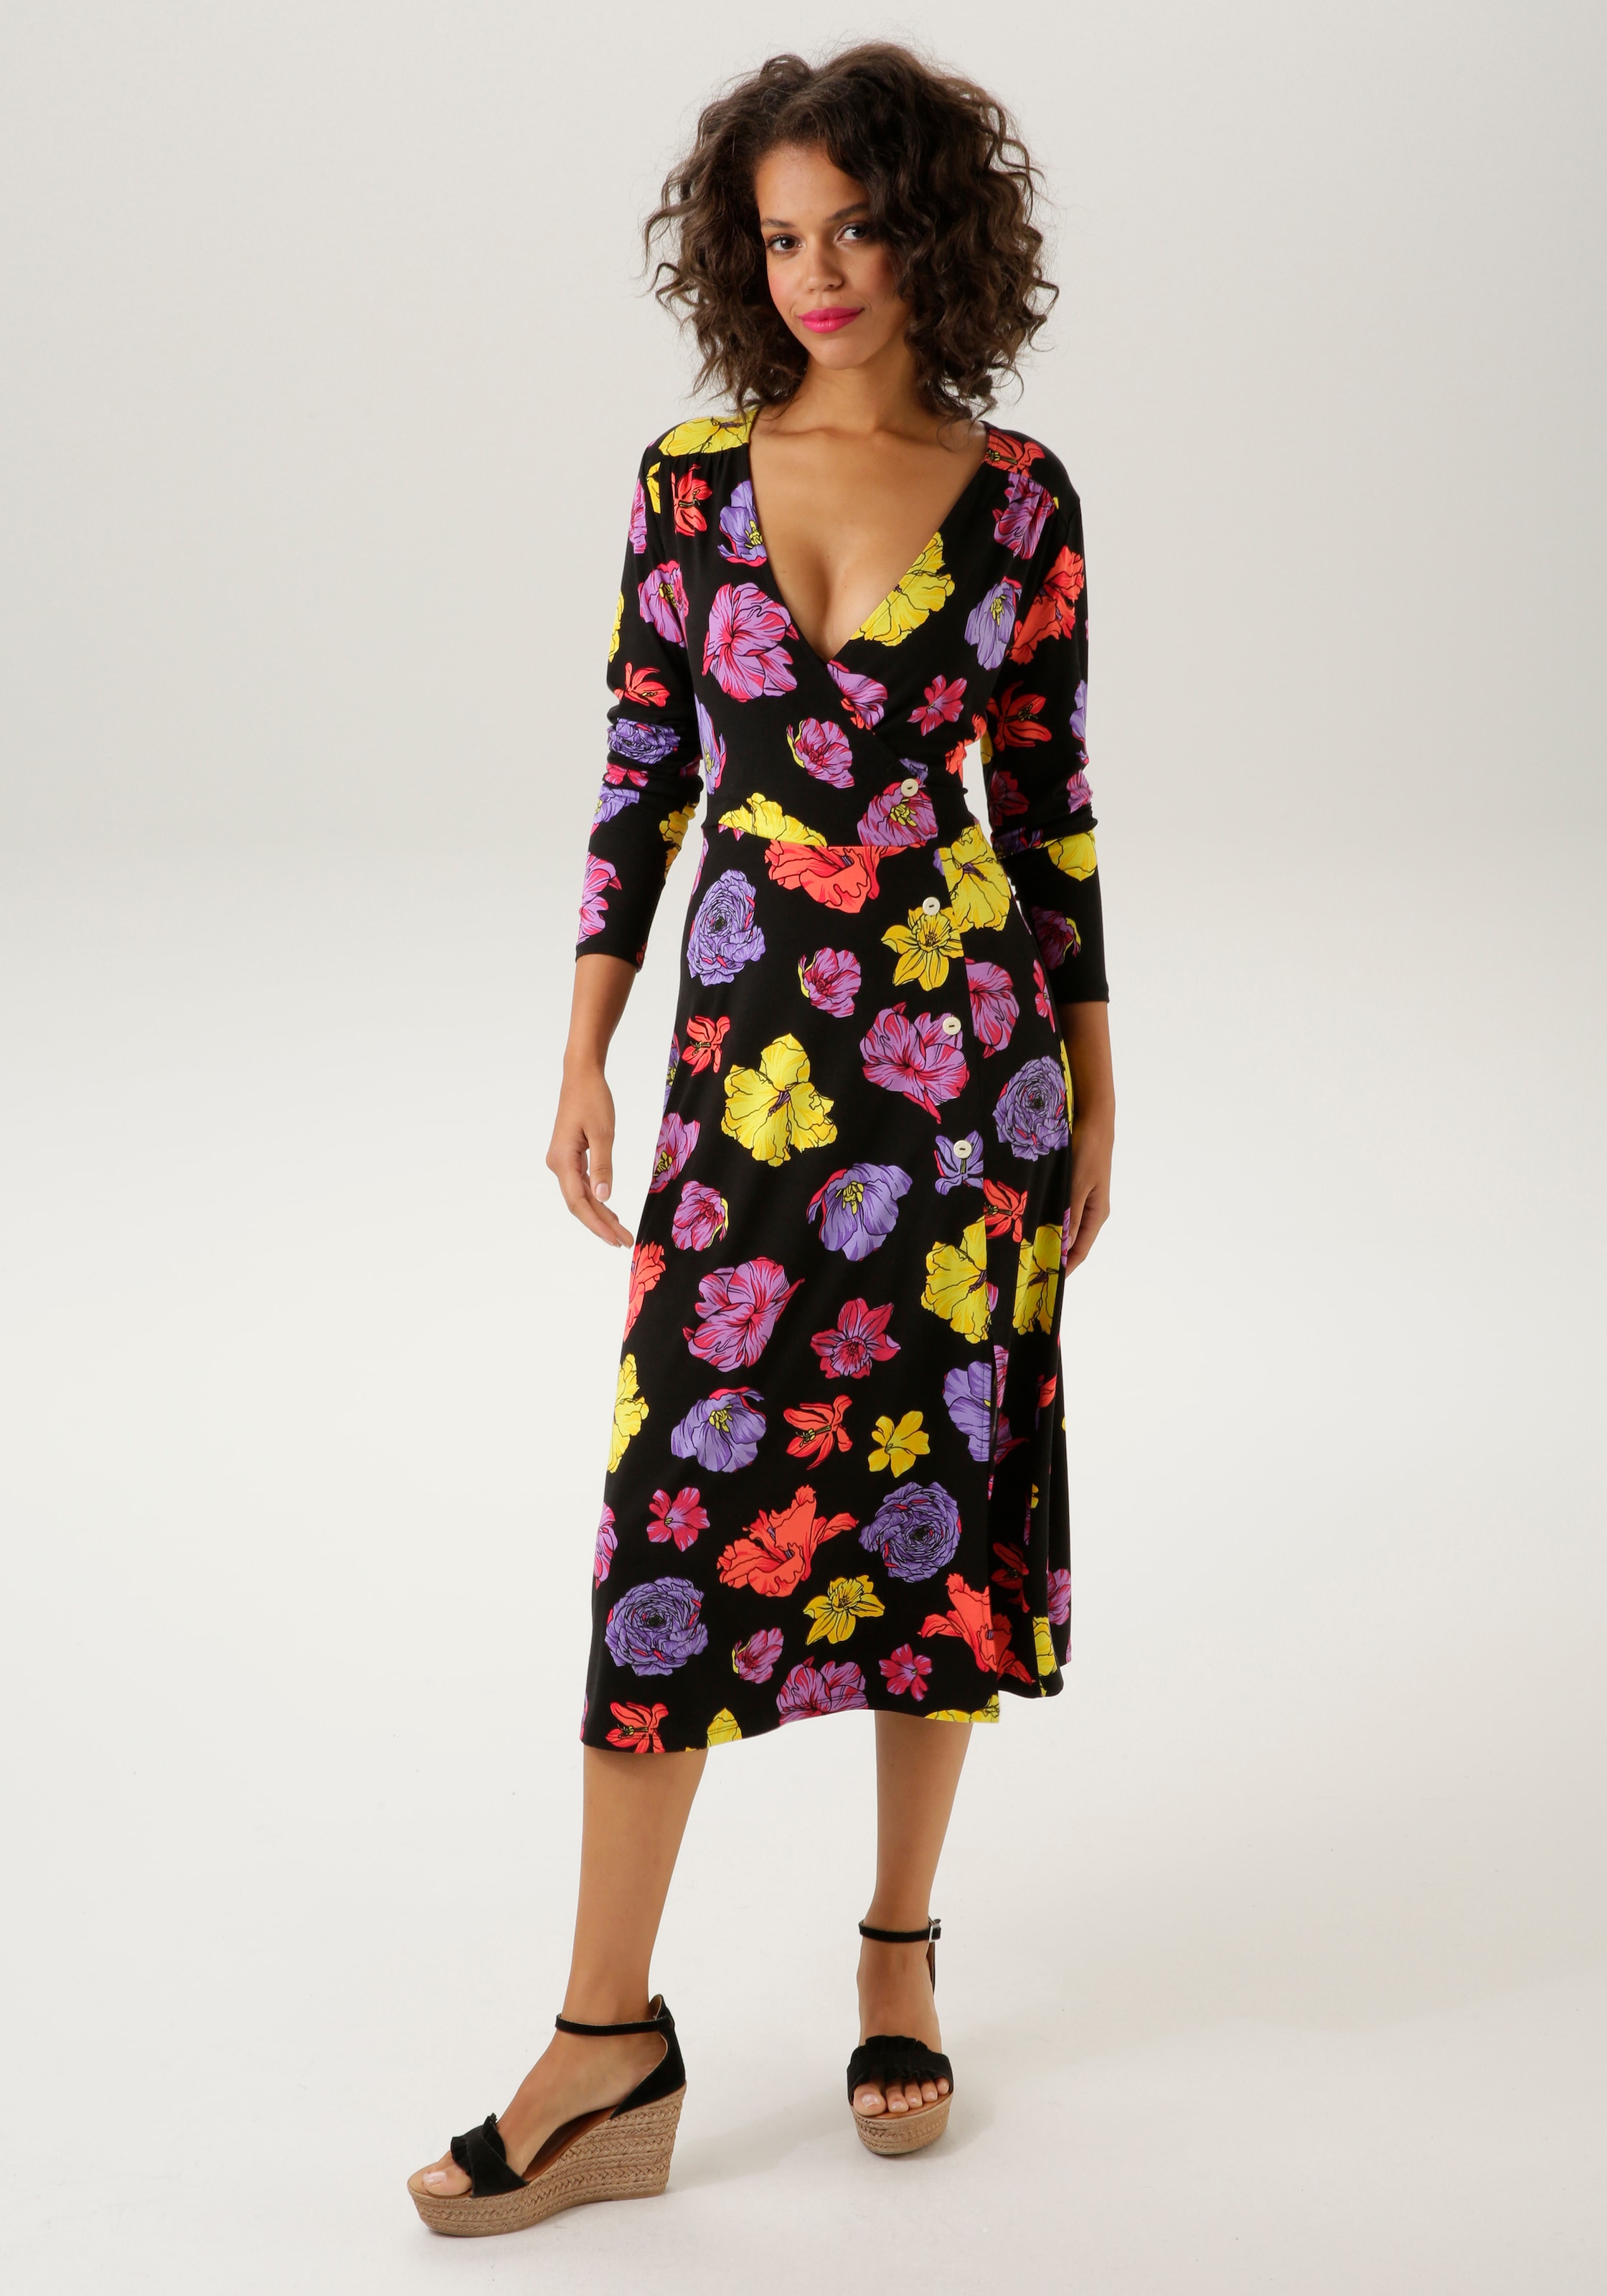 Jerseykleid, mit farbenfrohen Blüten bedruckt - NEUE KOLLEKTION